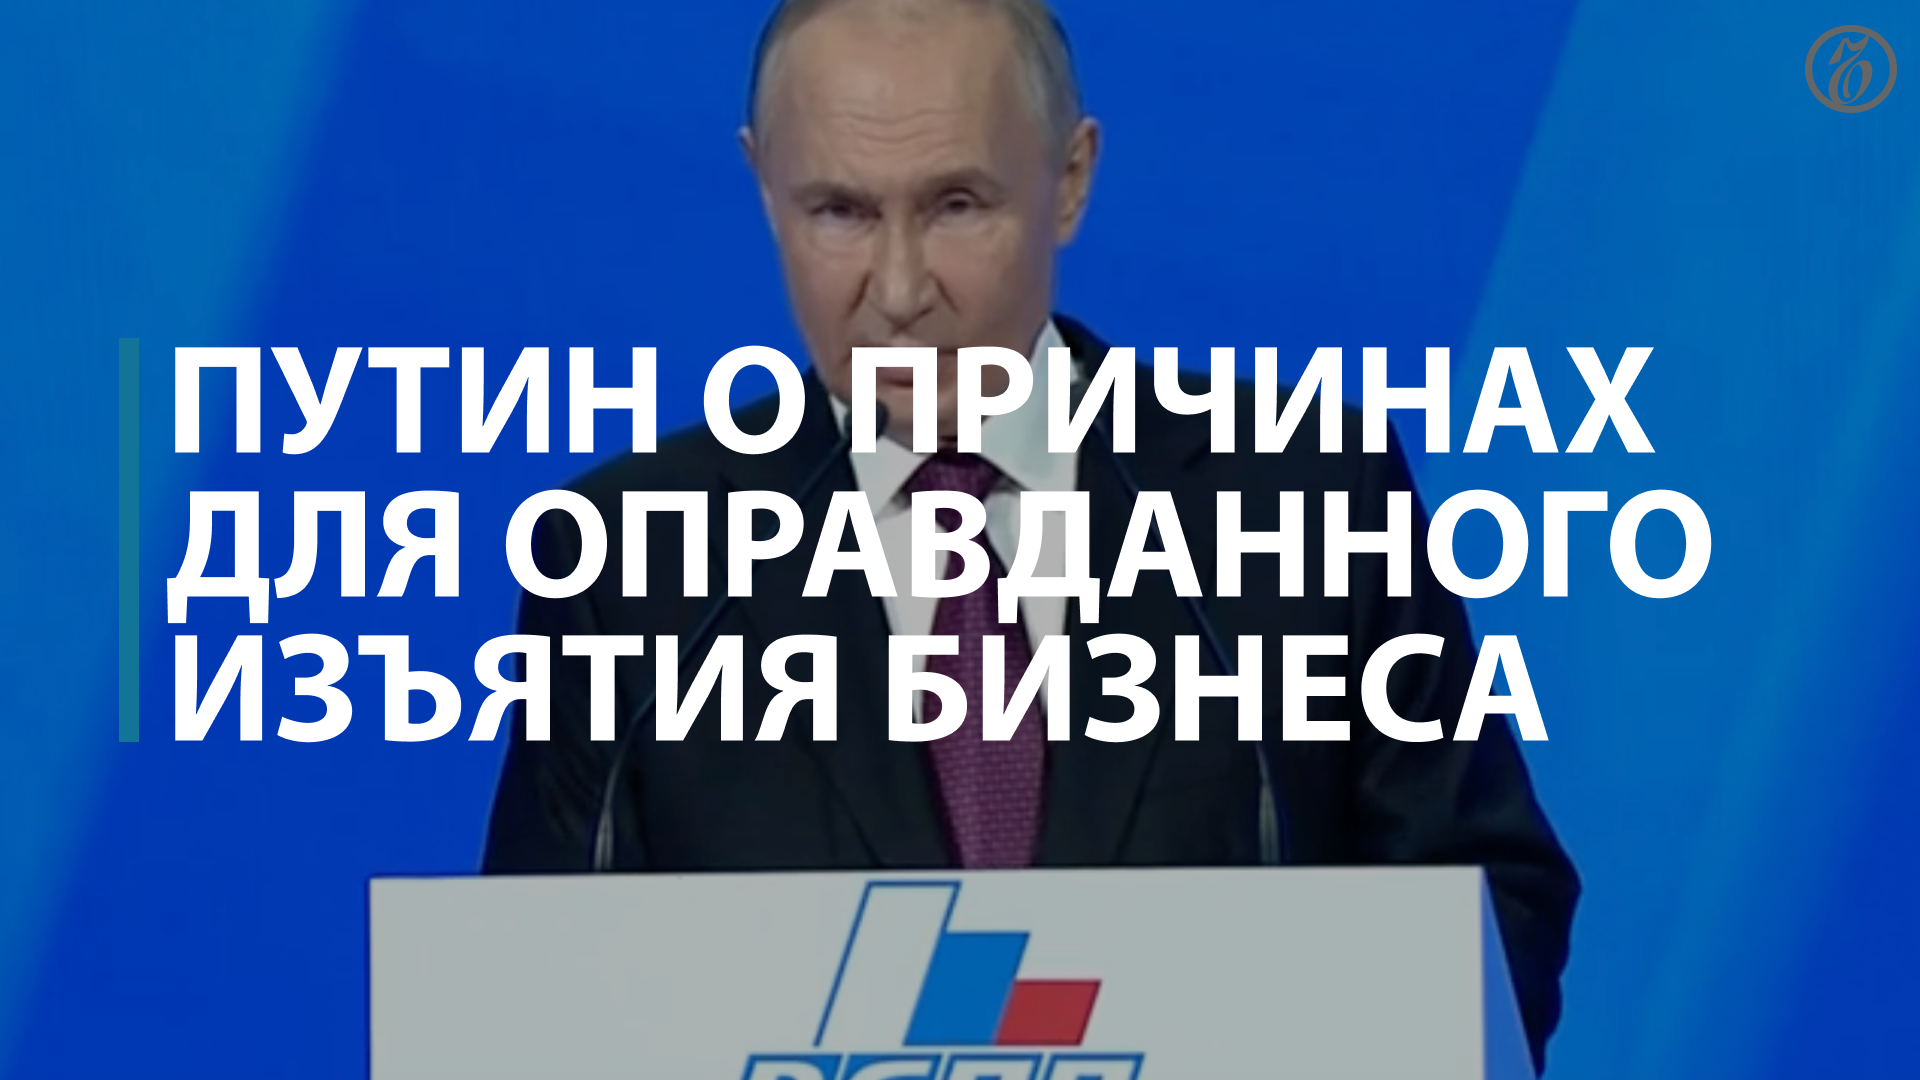 Путин назвал причины для оправданного изъятия бизнеса — Коммерсантъ